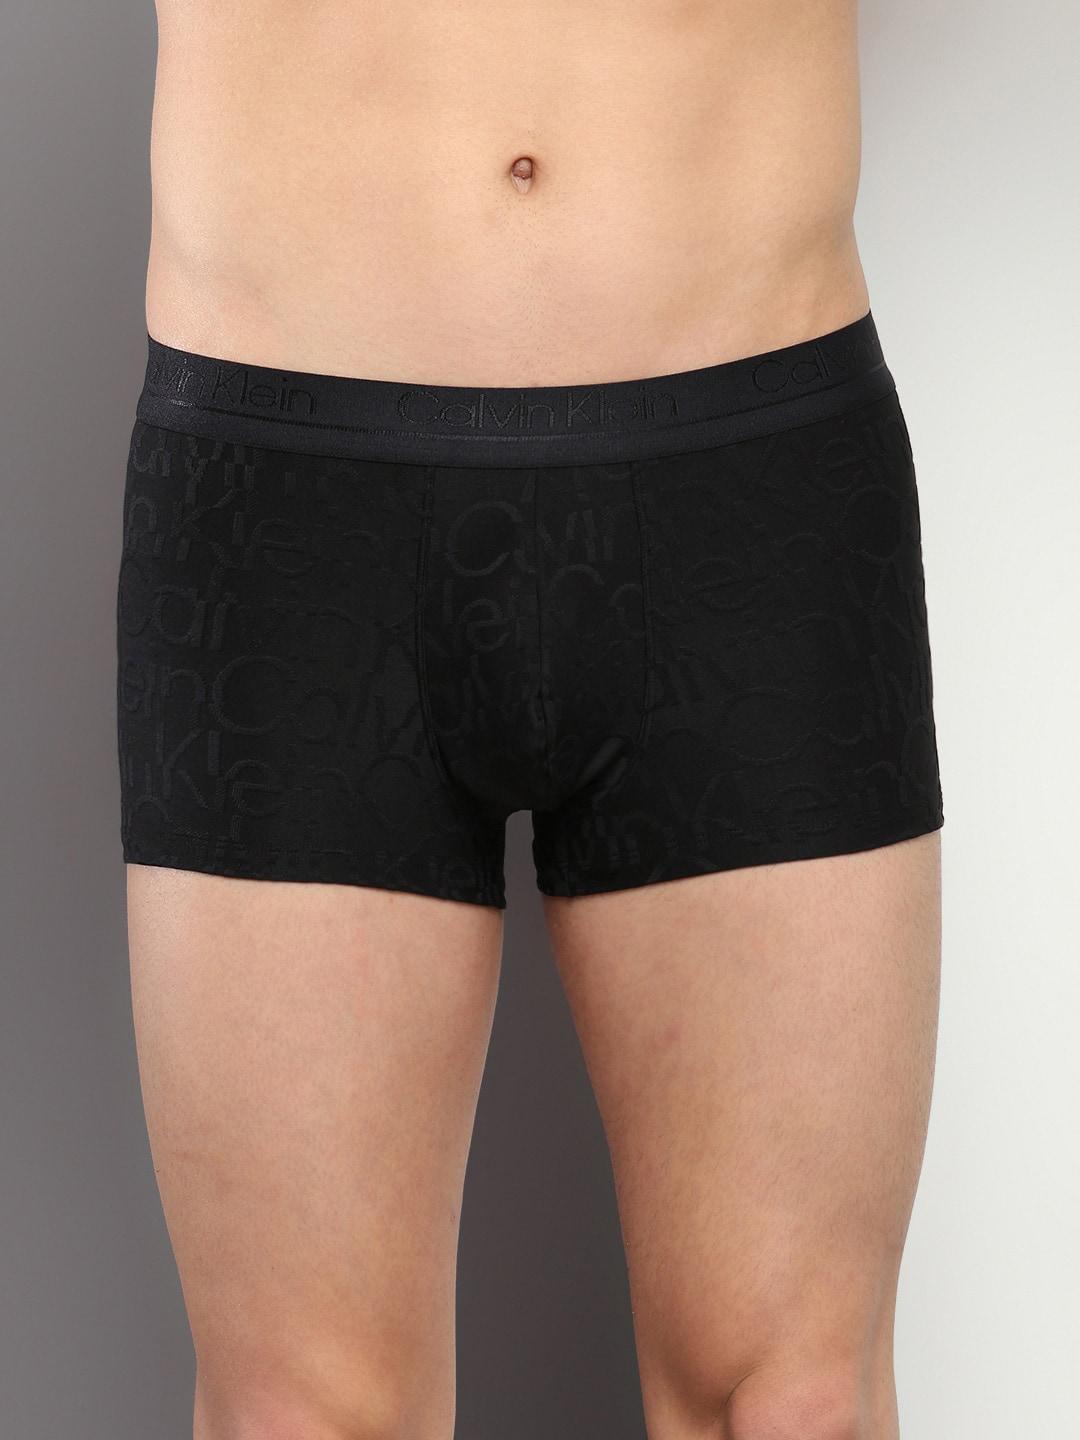 calvin-klein-underwear-men-mid-rise-trunk-nb3392ub1